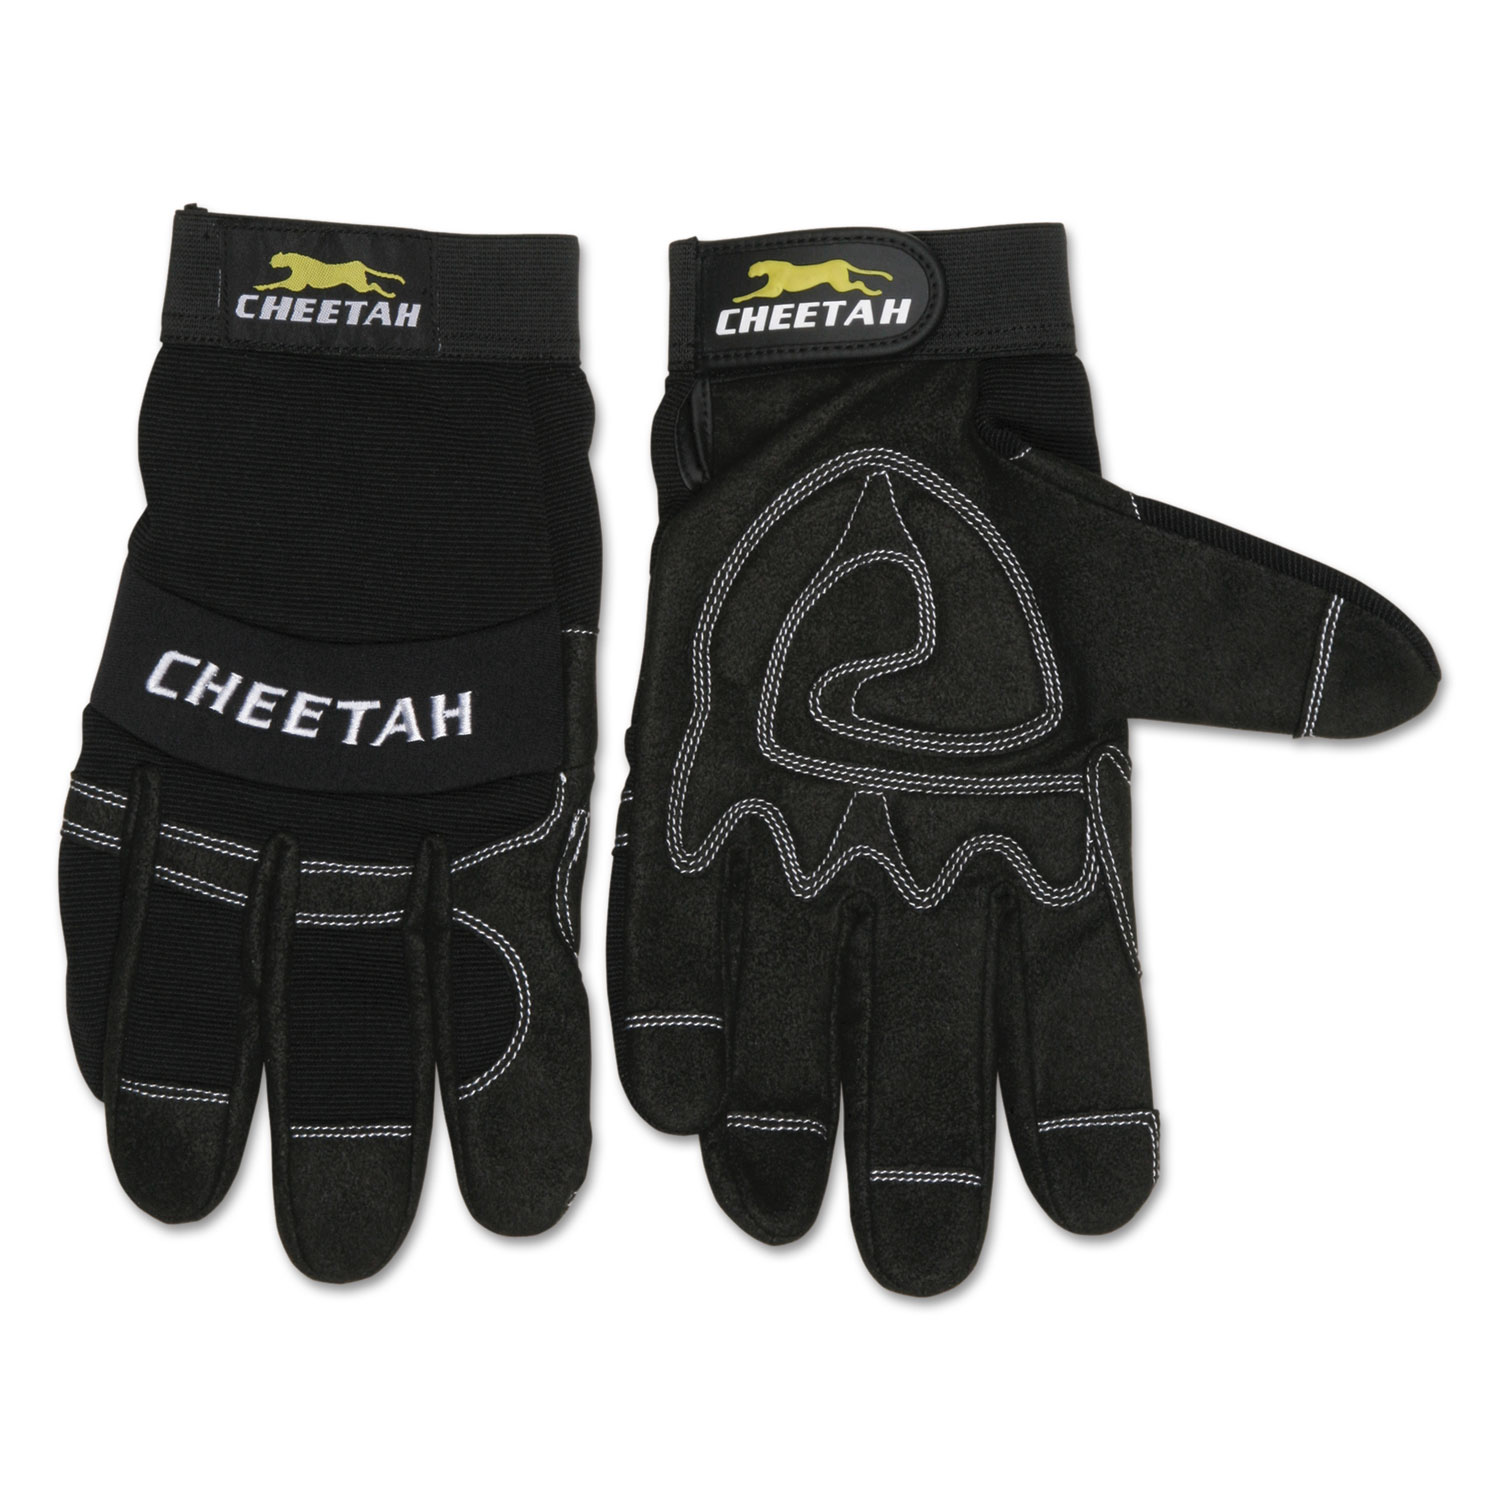 Pilates Grip Gloves, Black Cheetah